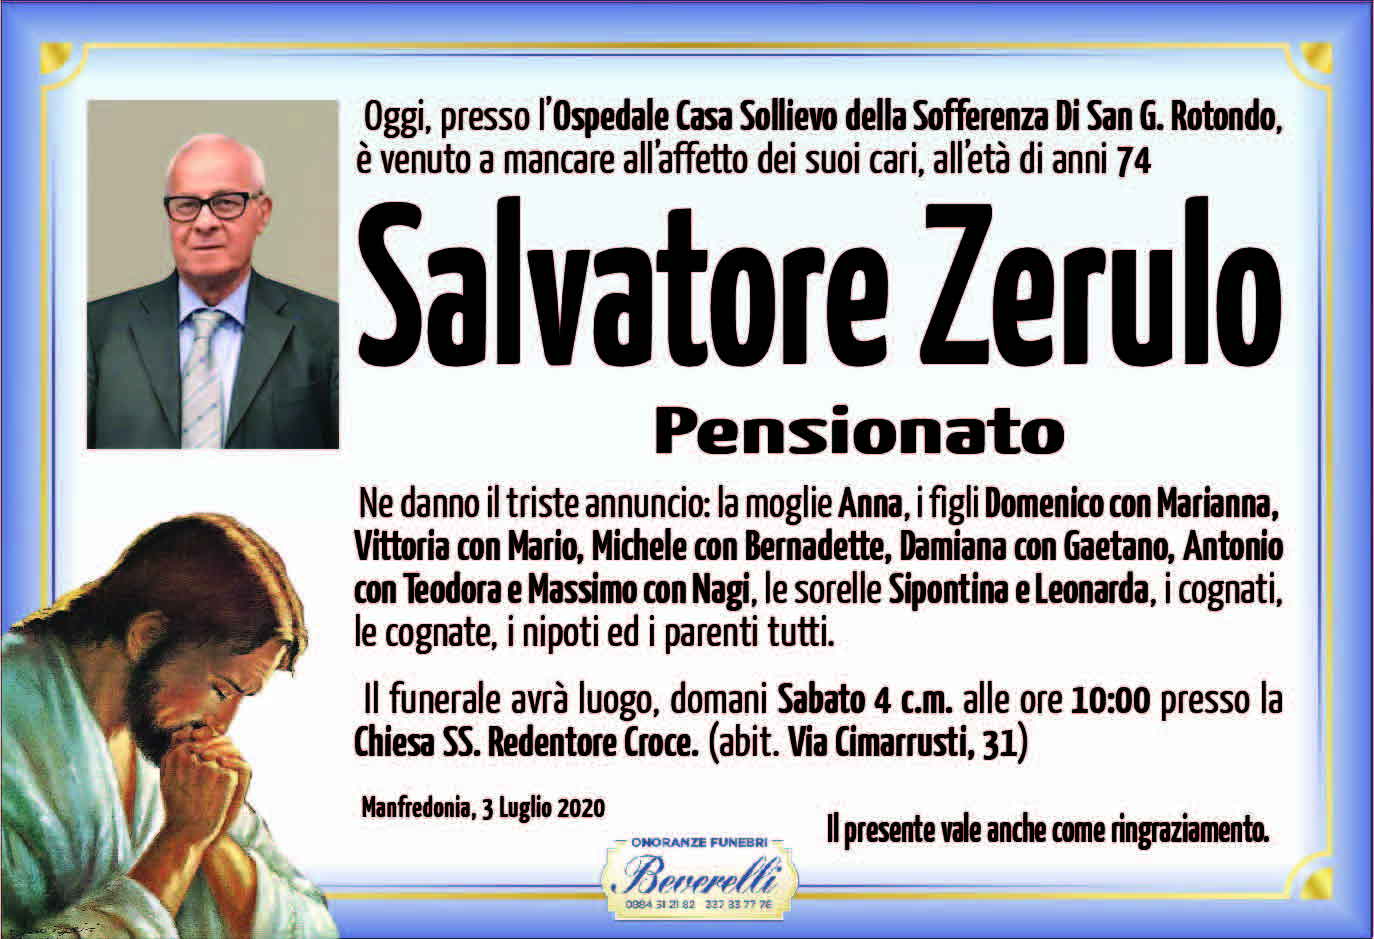 Salvatore Zerulo